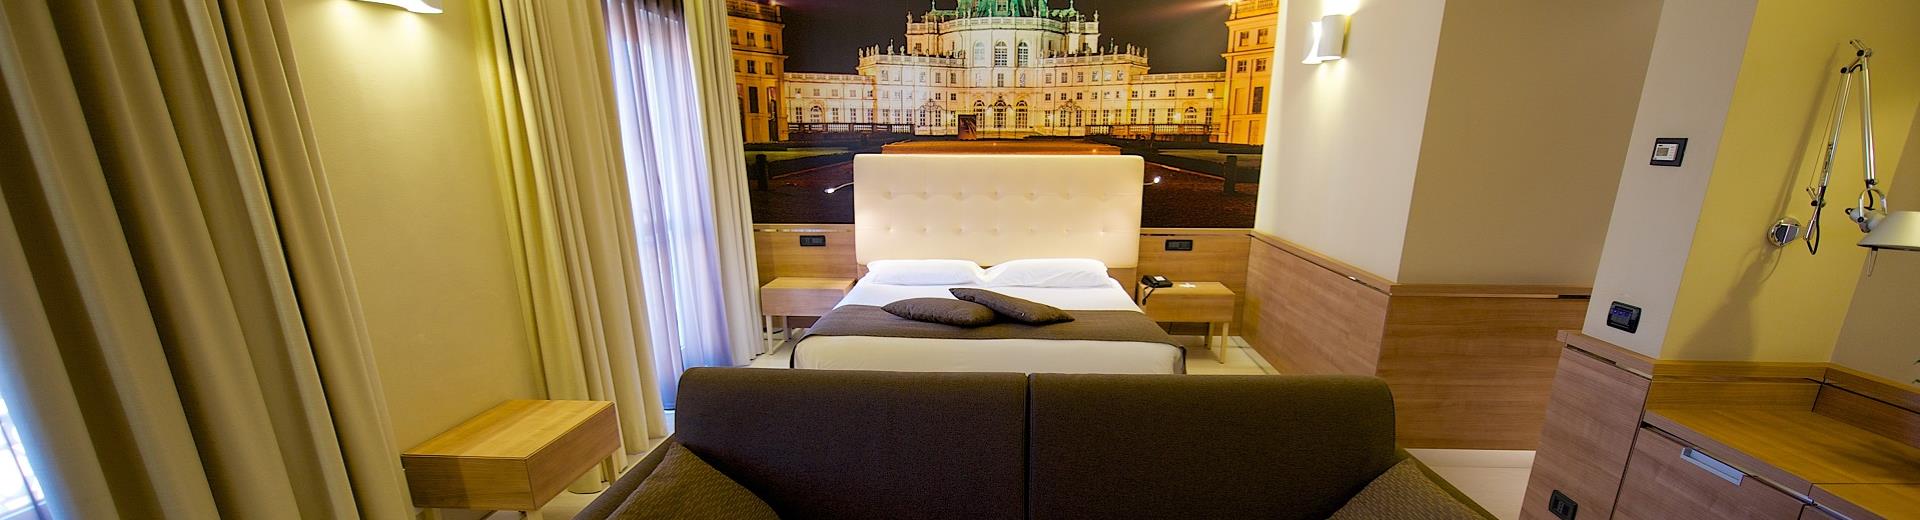 Comfort ed eleganza nelle Family Room del nostro hotel 4 stelle a Torino